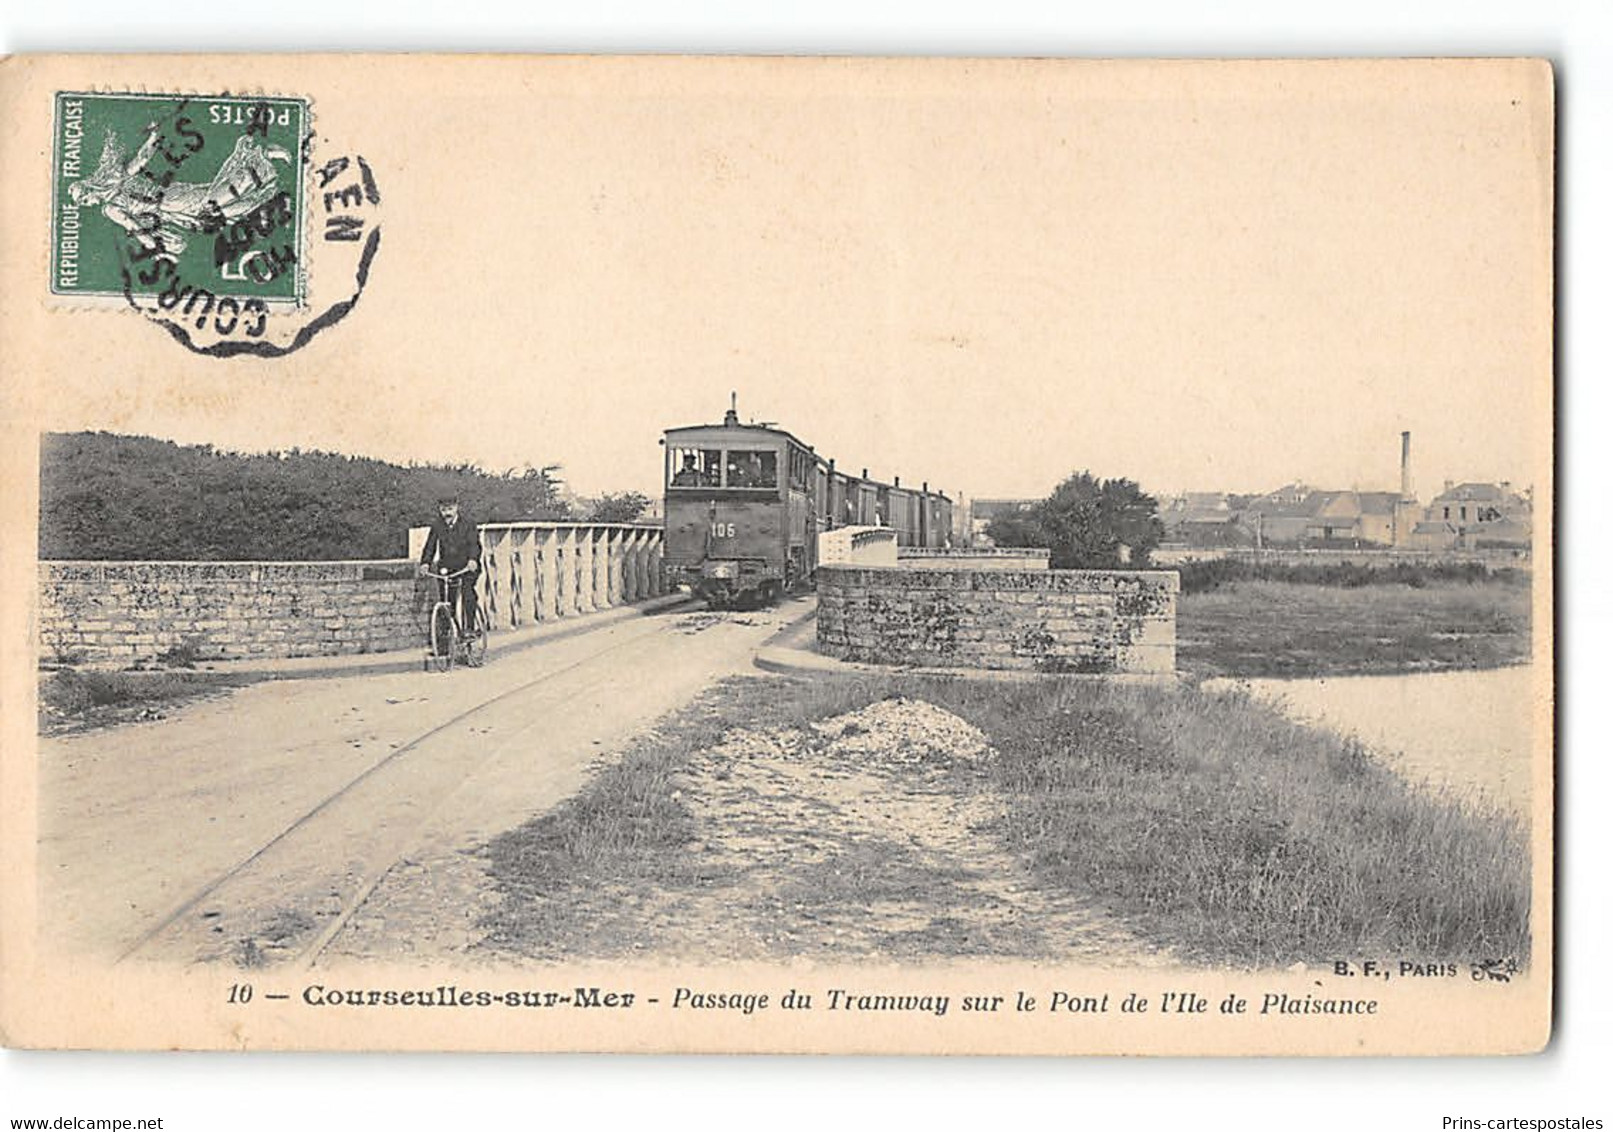 Lot de 50 cpa France - Theme Chemins de Fer - Trains - Tramways